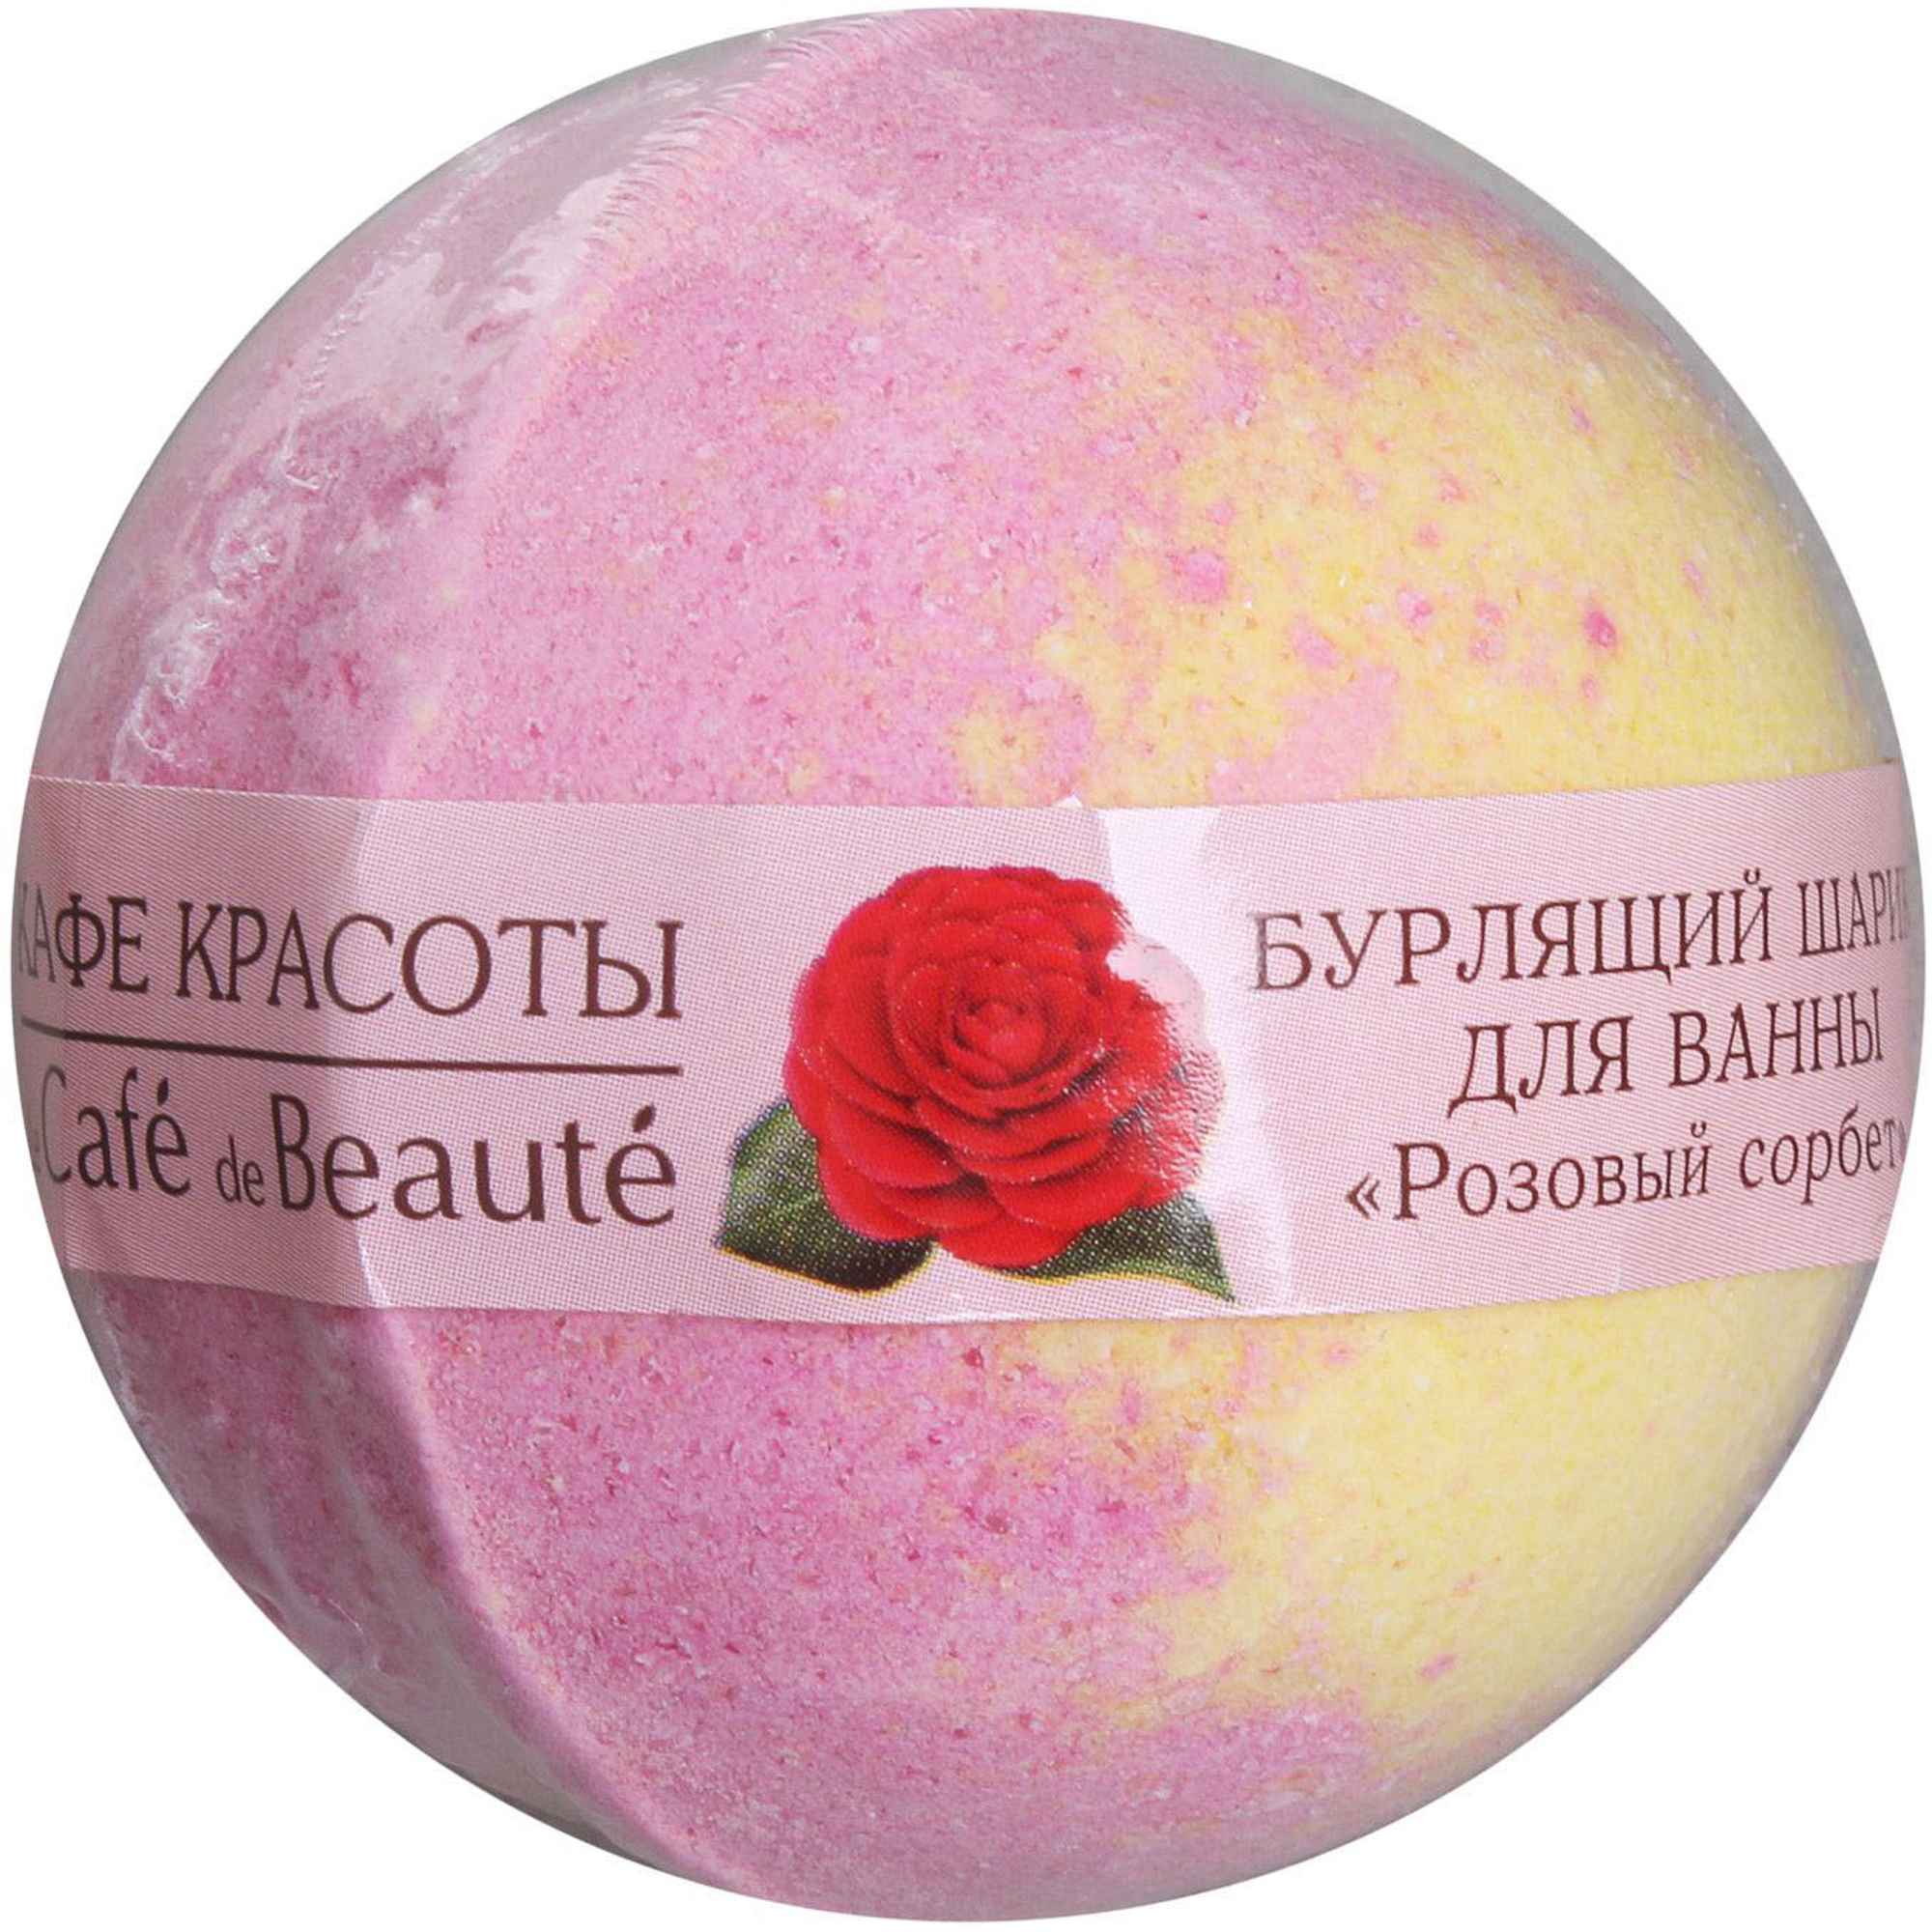 Шар для ванны Кафе Красоты Розовый сорбет 120 г